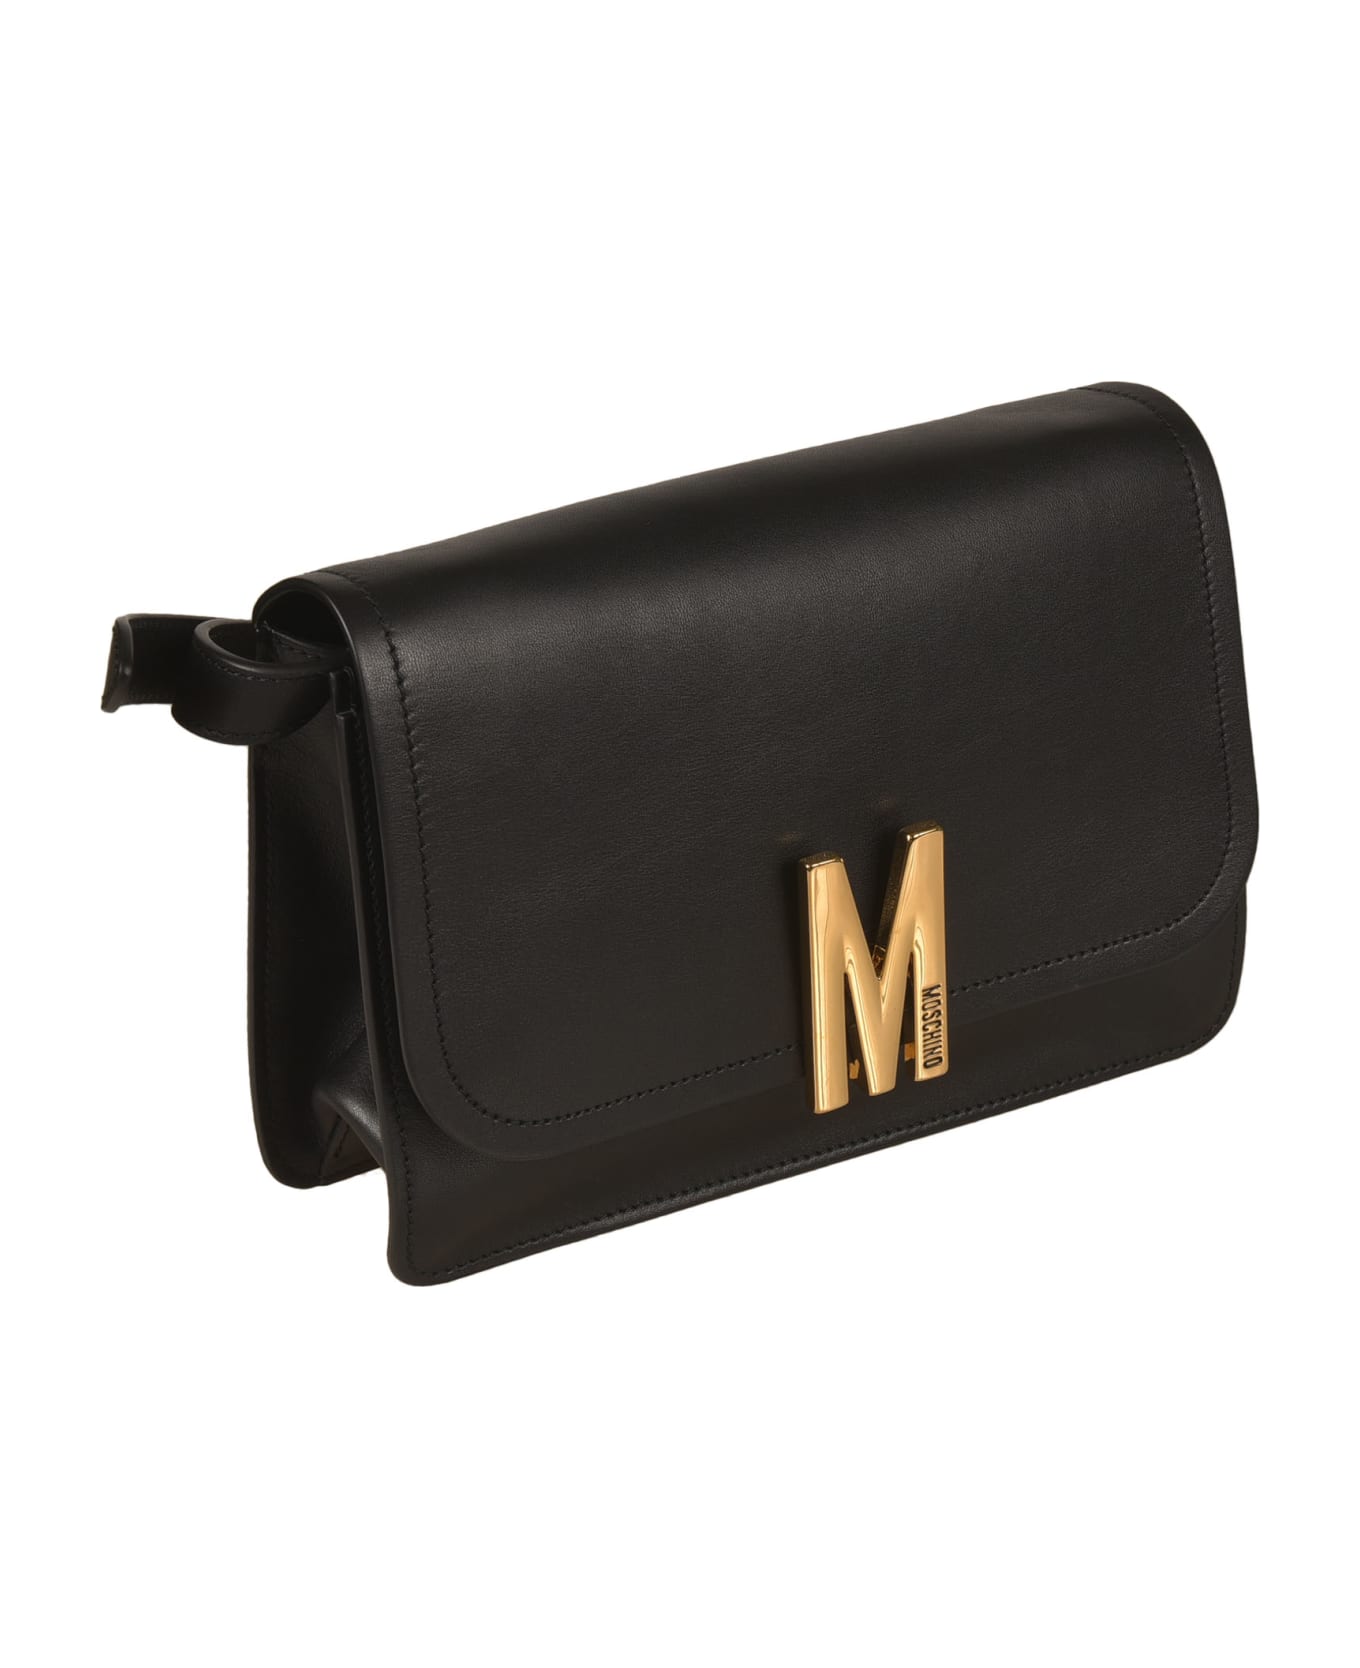 Moschino Logo Front Shoulder Bag - Black